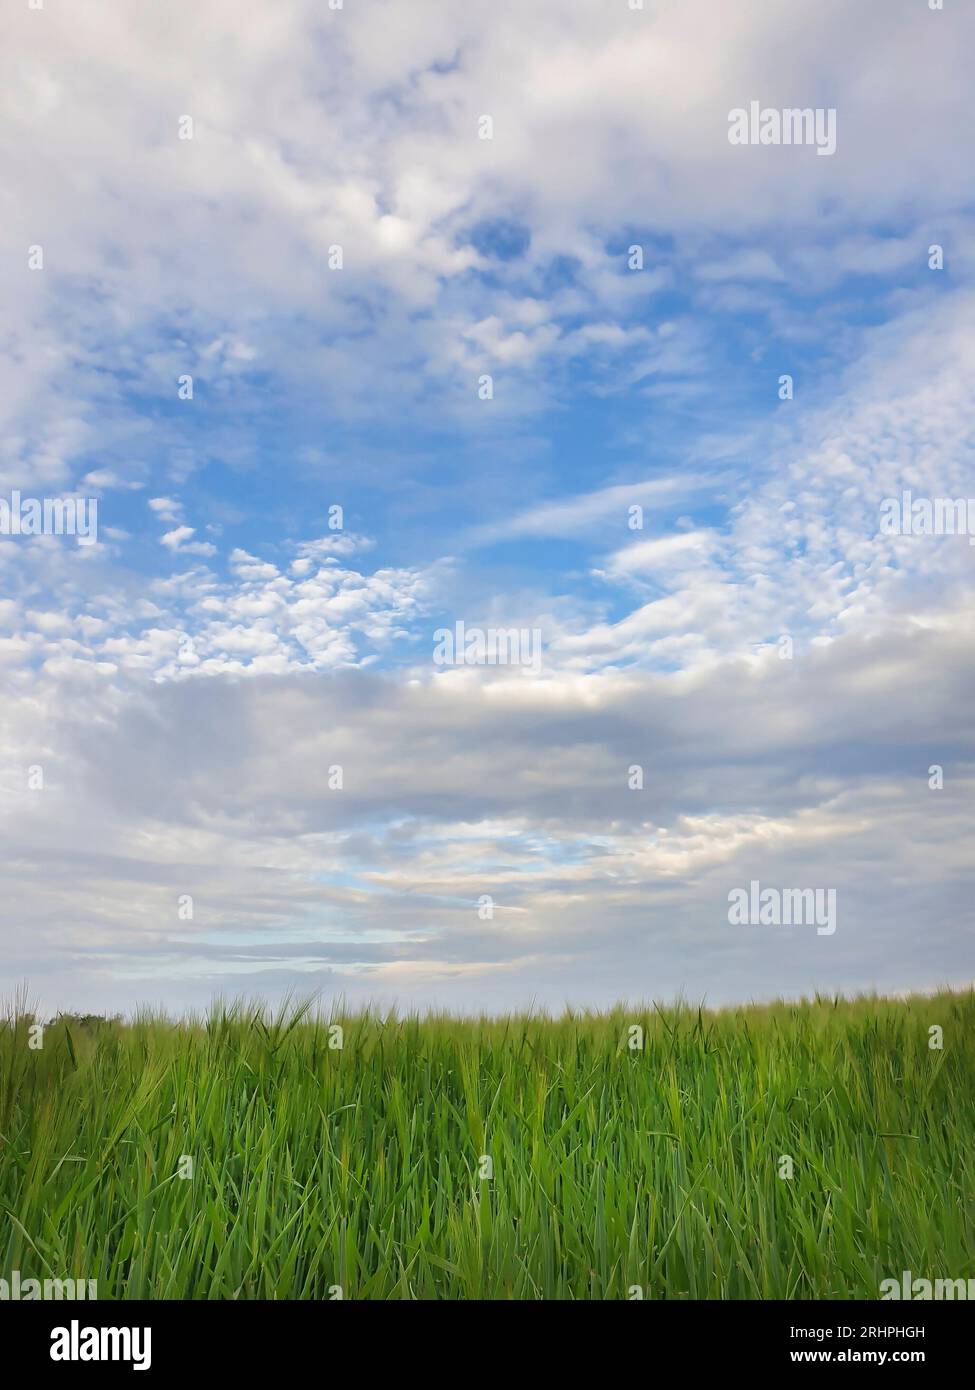 Deutschland, Teltow Fläming, grüne Landschaft, Weizenfelder, Sommer, endlose Weite, blauer Himmel mit Wolken, Weizenfeld im Vordergrund, Pflanzenstiele, Maisohren Stockfoto